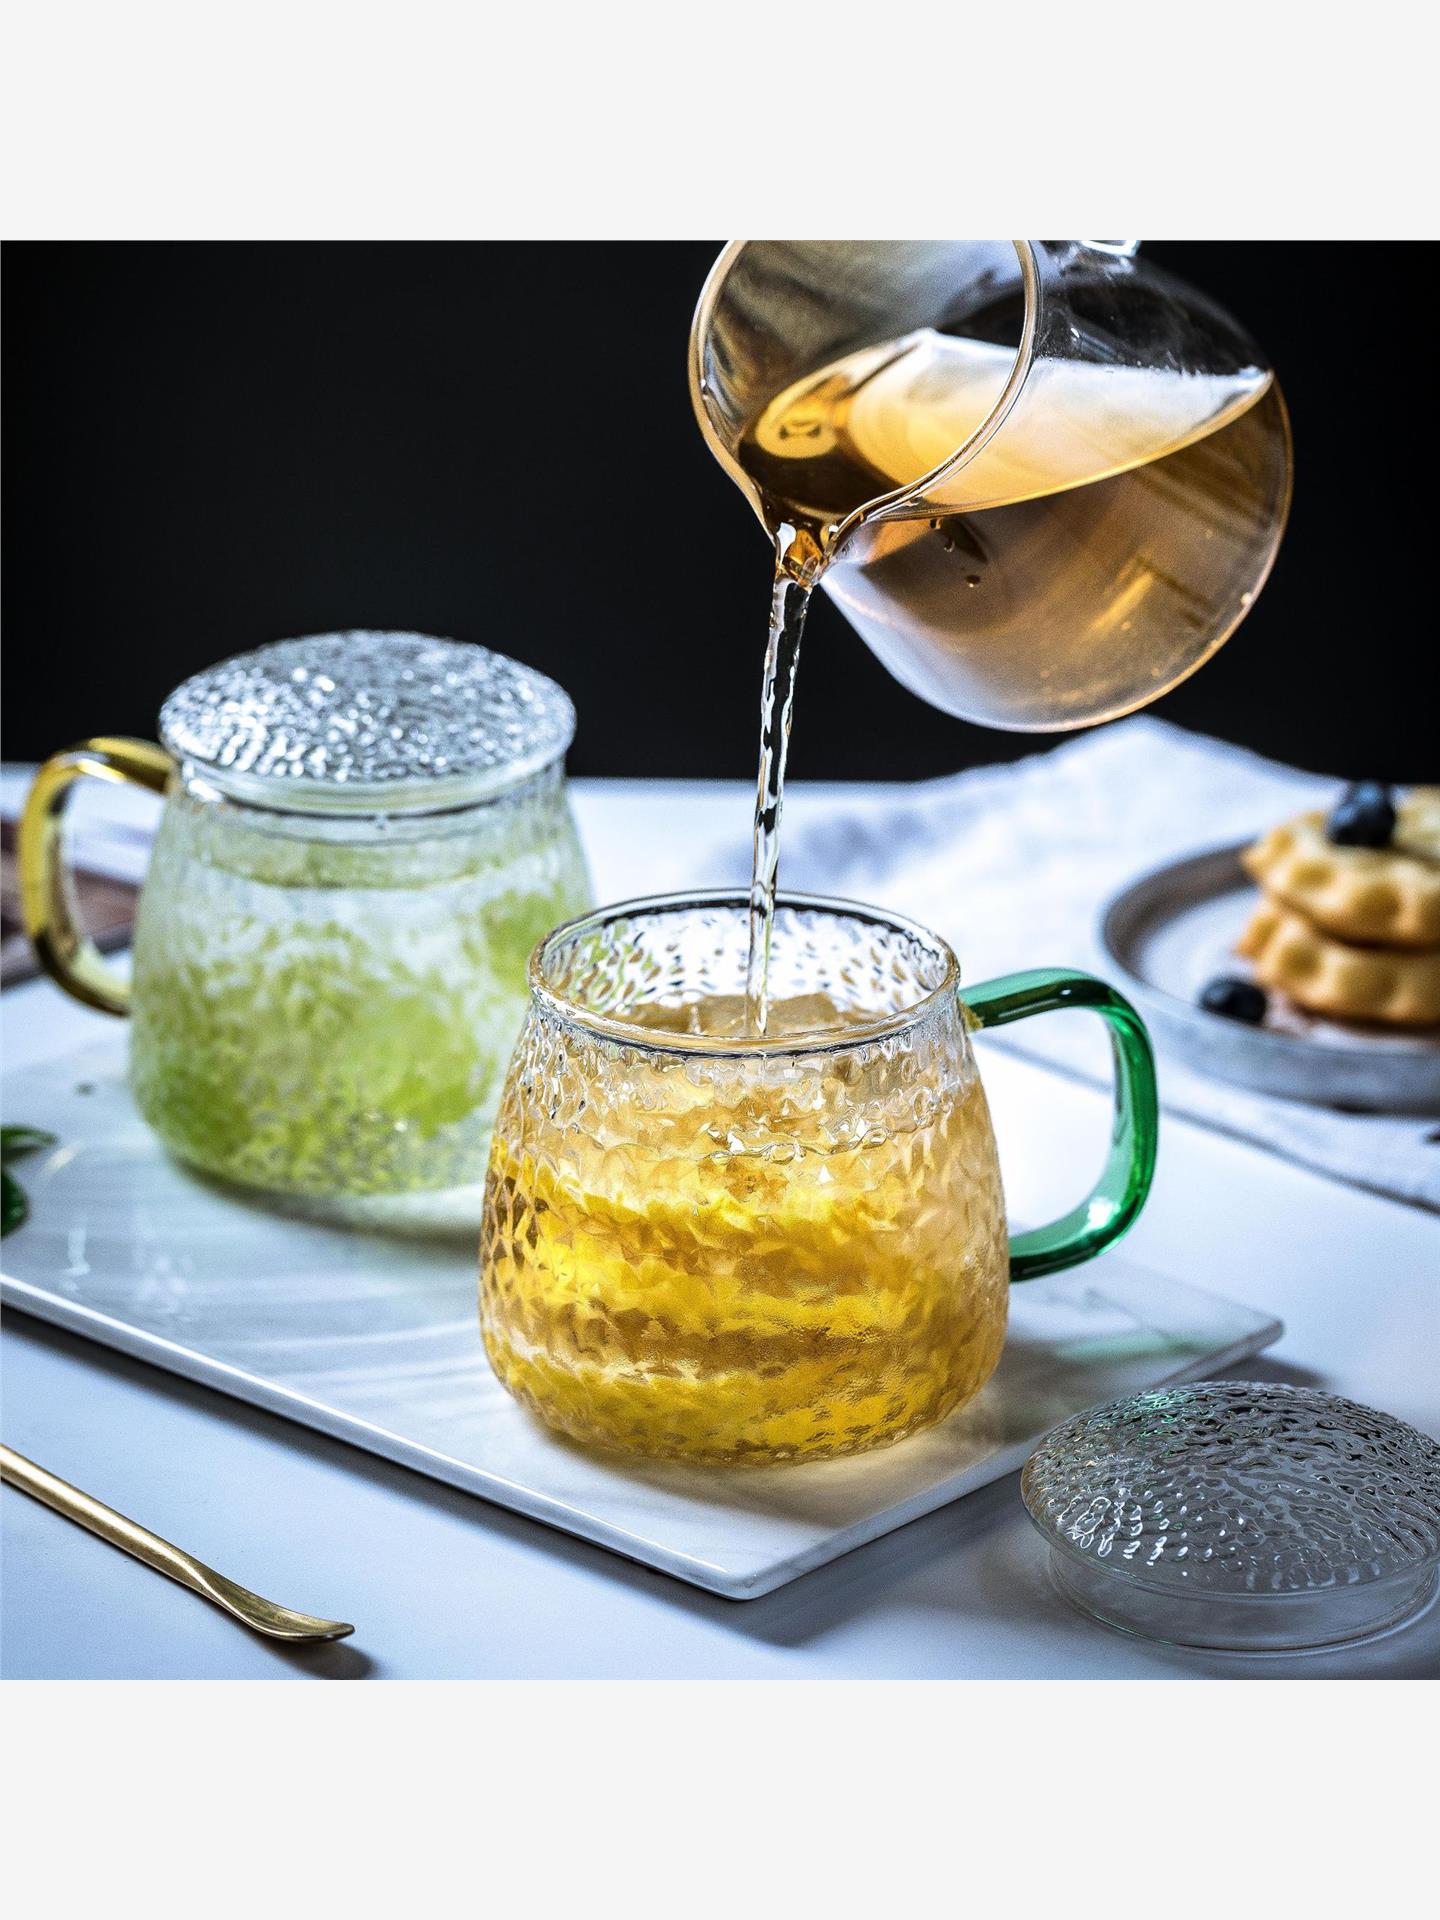 日式锤纹玻璃杯带把带盖ins风家用简约茶杯带把手柄茶水分离杯子